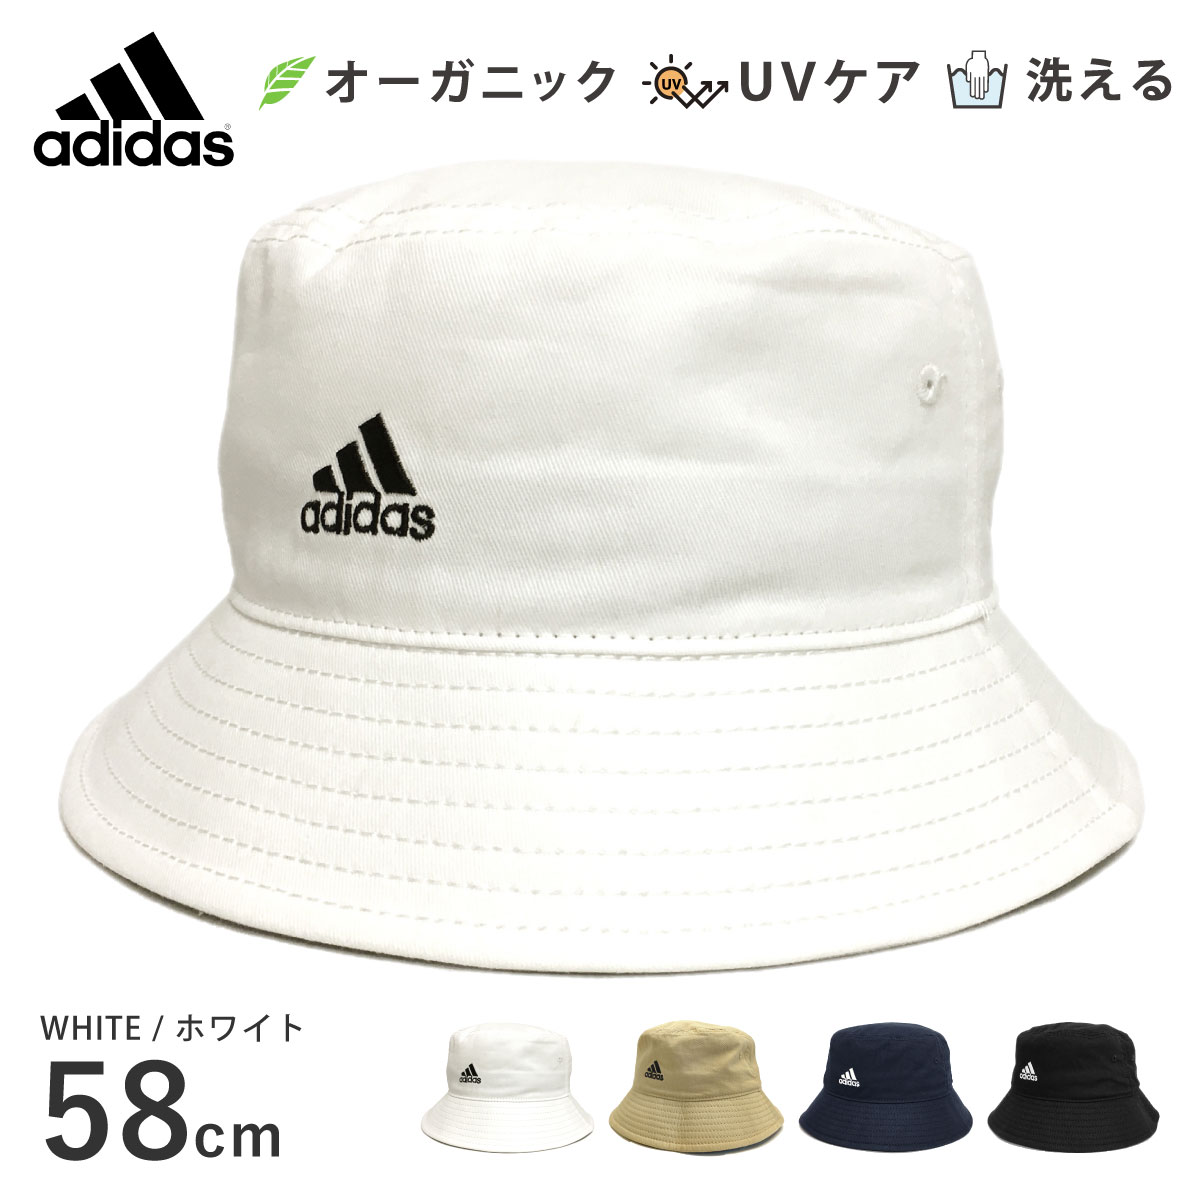 adidas バケットハット オーガニックコットン 58cm 60cm 無地 adi-117-111...